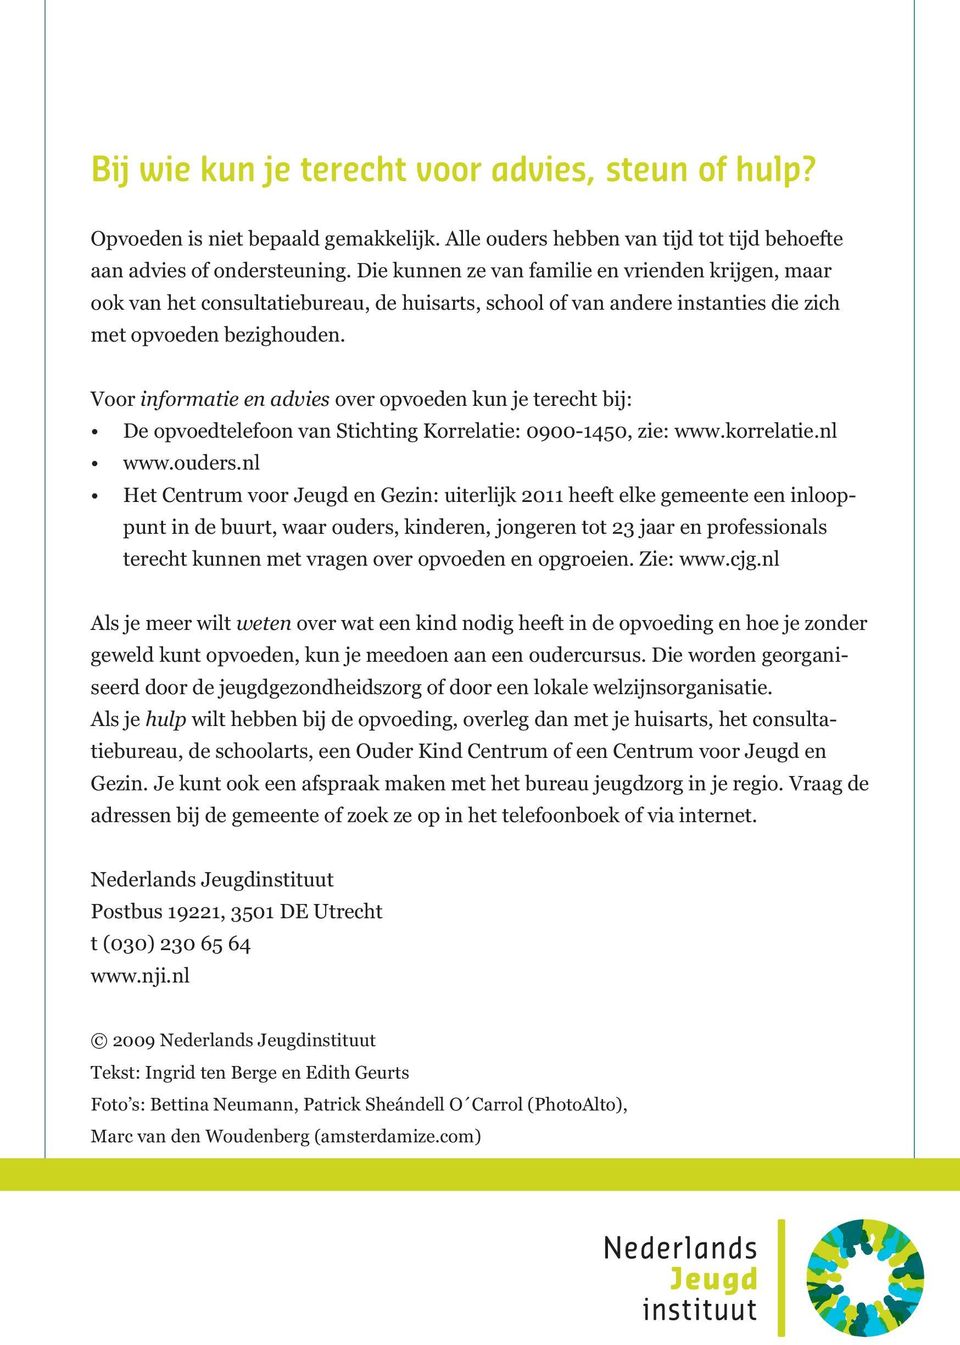 Voor informatie en advies over opvoeden kun je terecht bij: De opvoedtelefoon van Stichting Korrelatie: 0900-1450, zie: www.korrelatie.nl www.ouders.